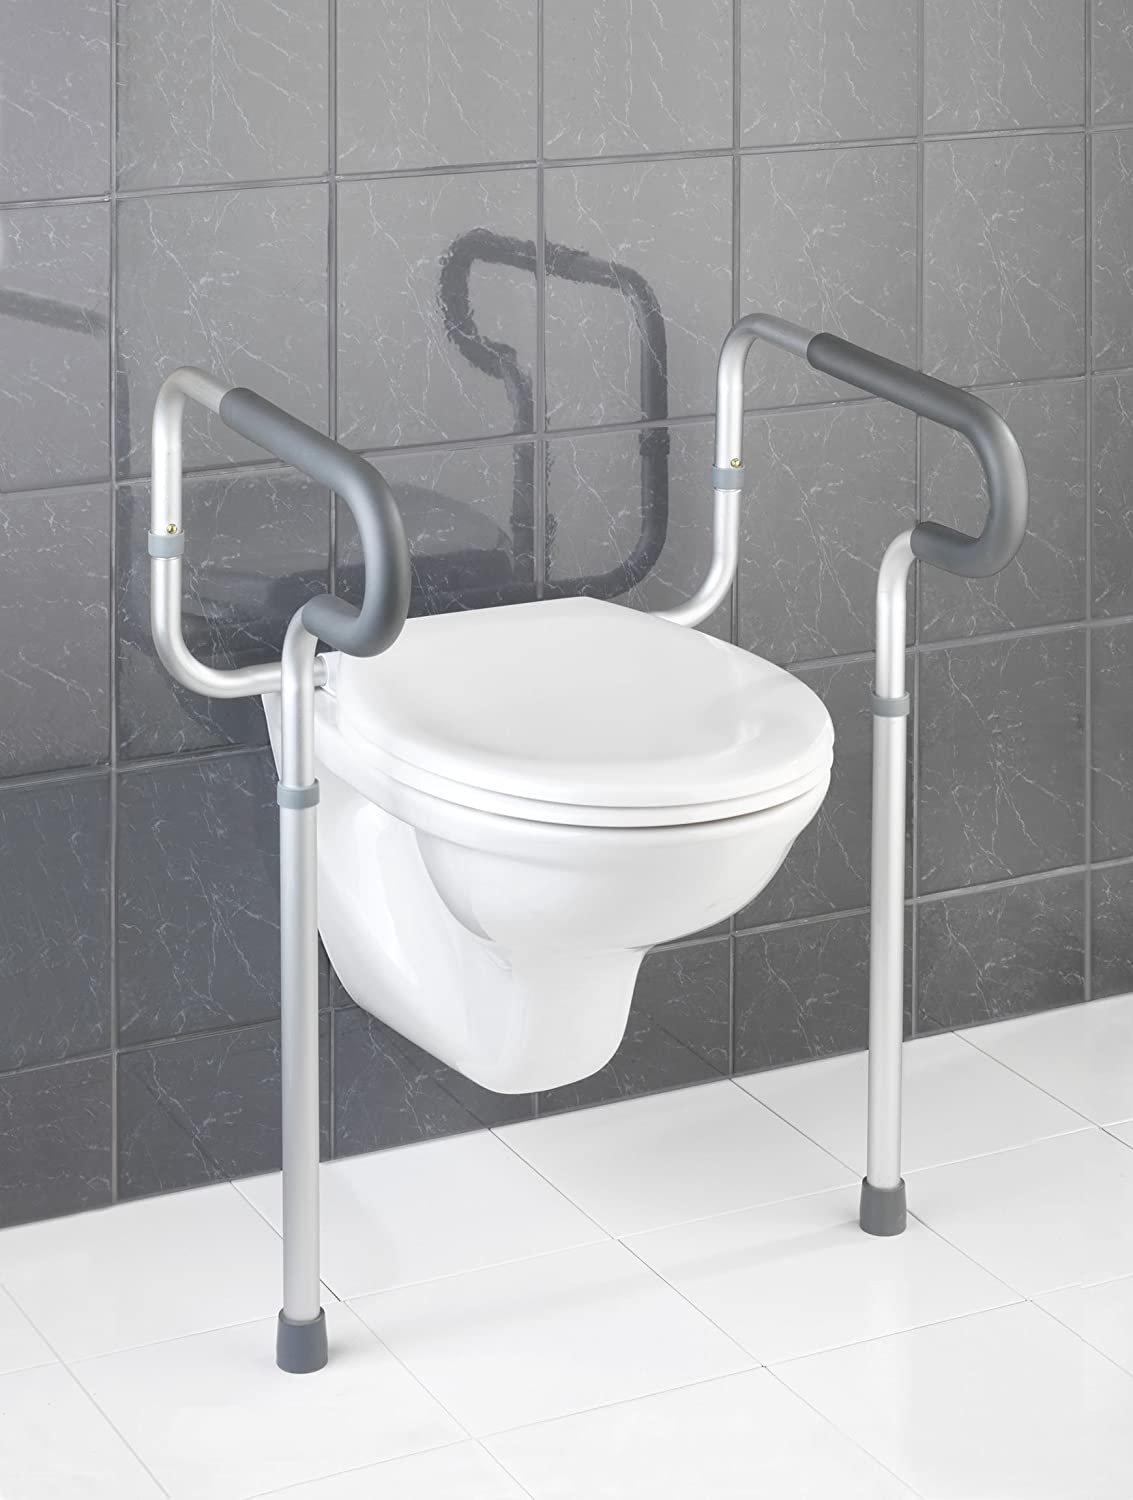 WC-Stützhilfe Secura, 5-fach höhenverstellbare Aufstehhilfe mit rutschfesten Gummifüßen, praktische Hilfe im Bad für notwendigen Halt, leichte Montage, 55,5 x 71-81,5 x 48cm, Aluminium rostfrei